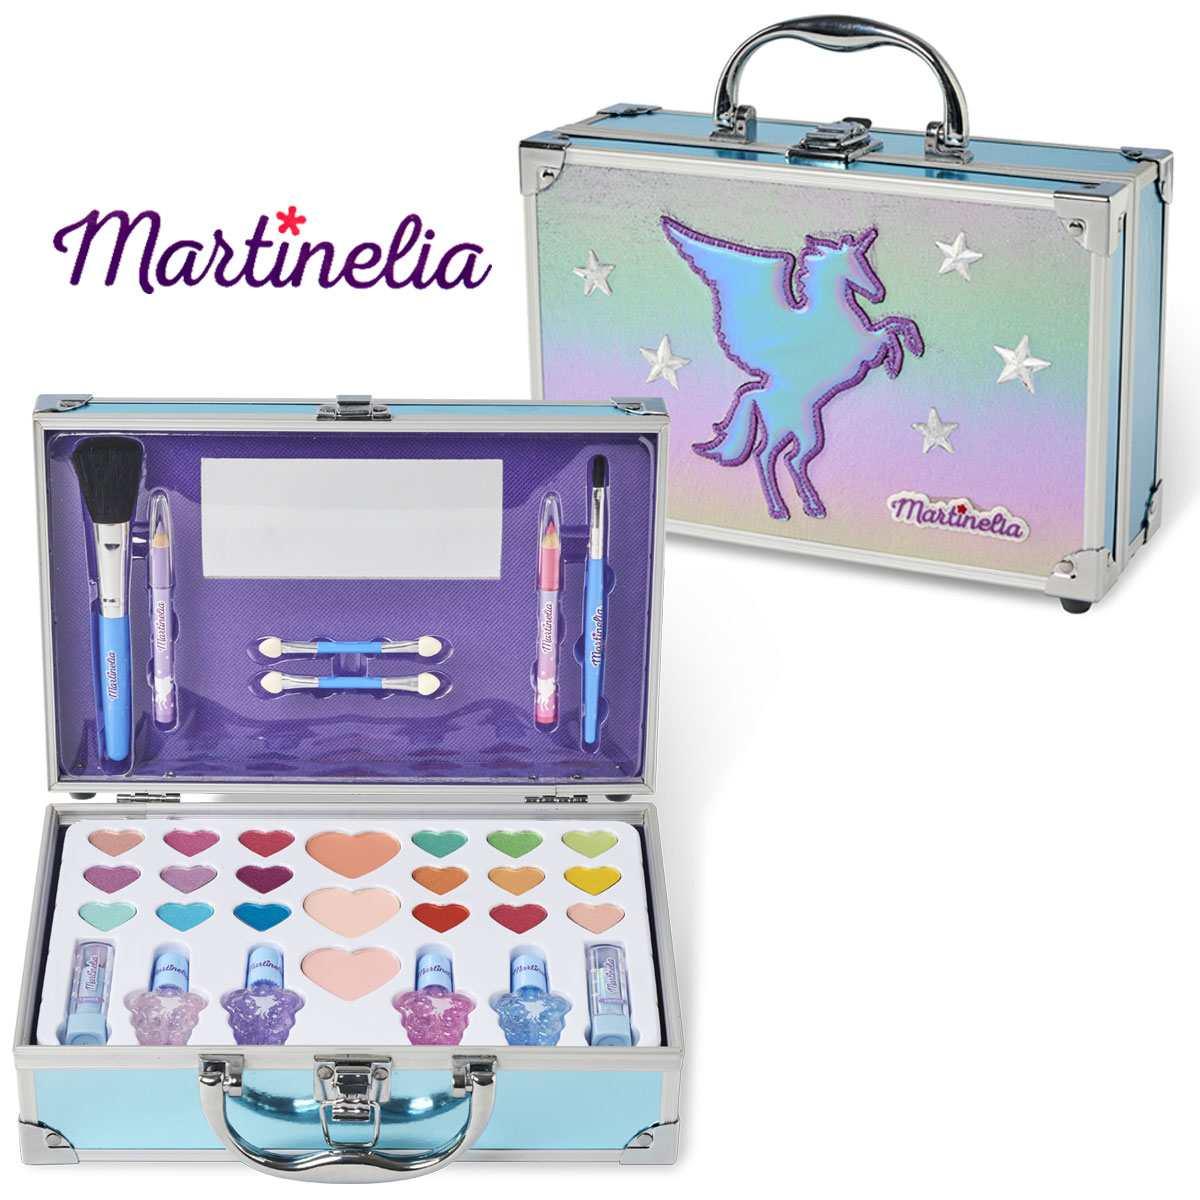 Martinelia galaxy dreams makeup case